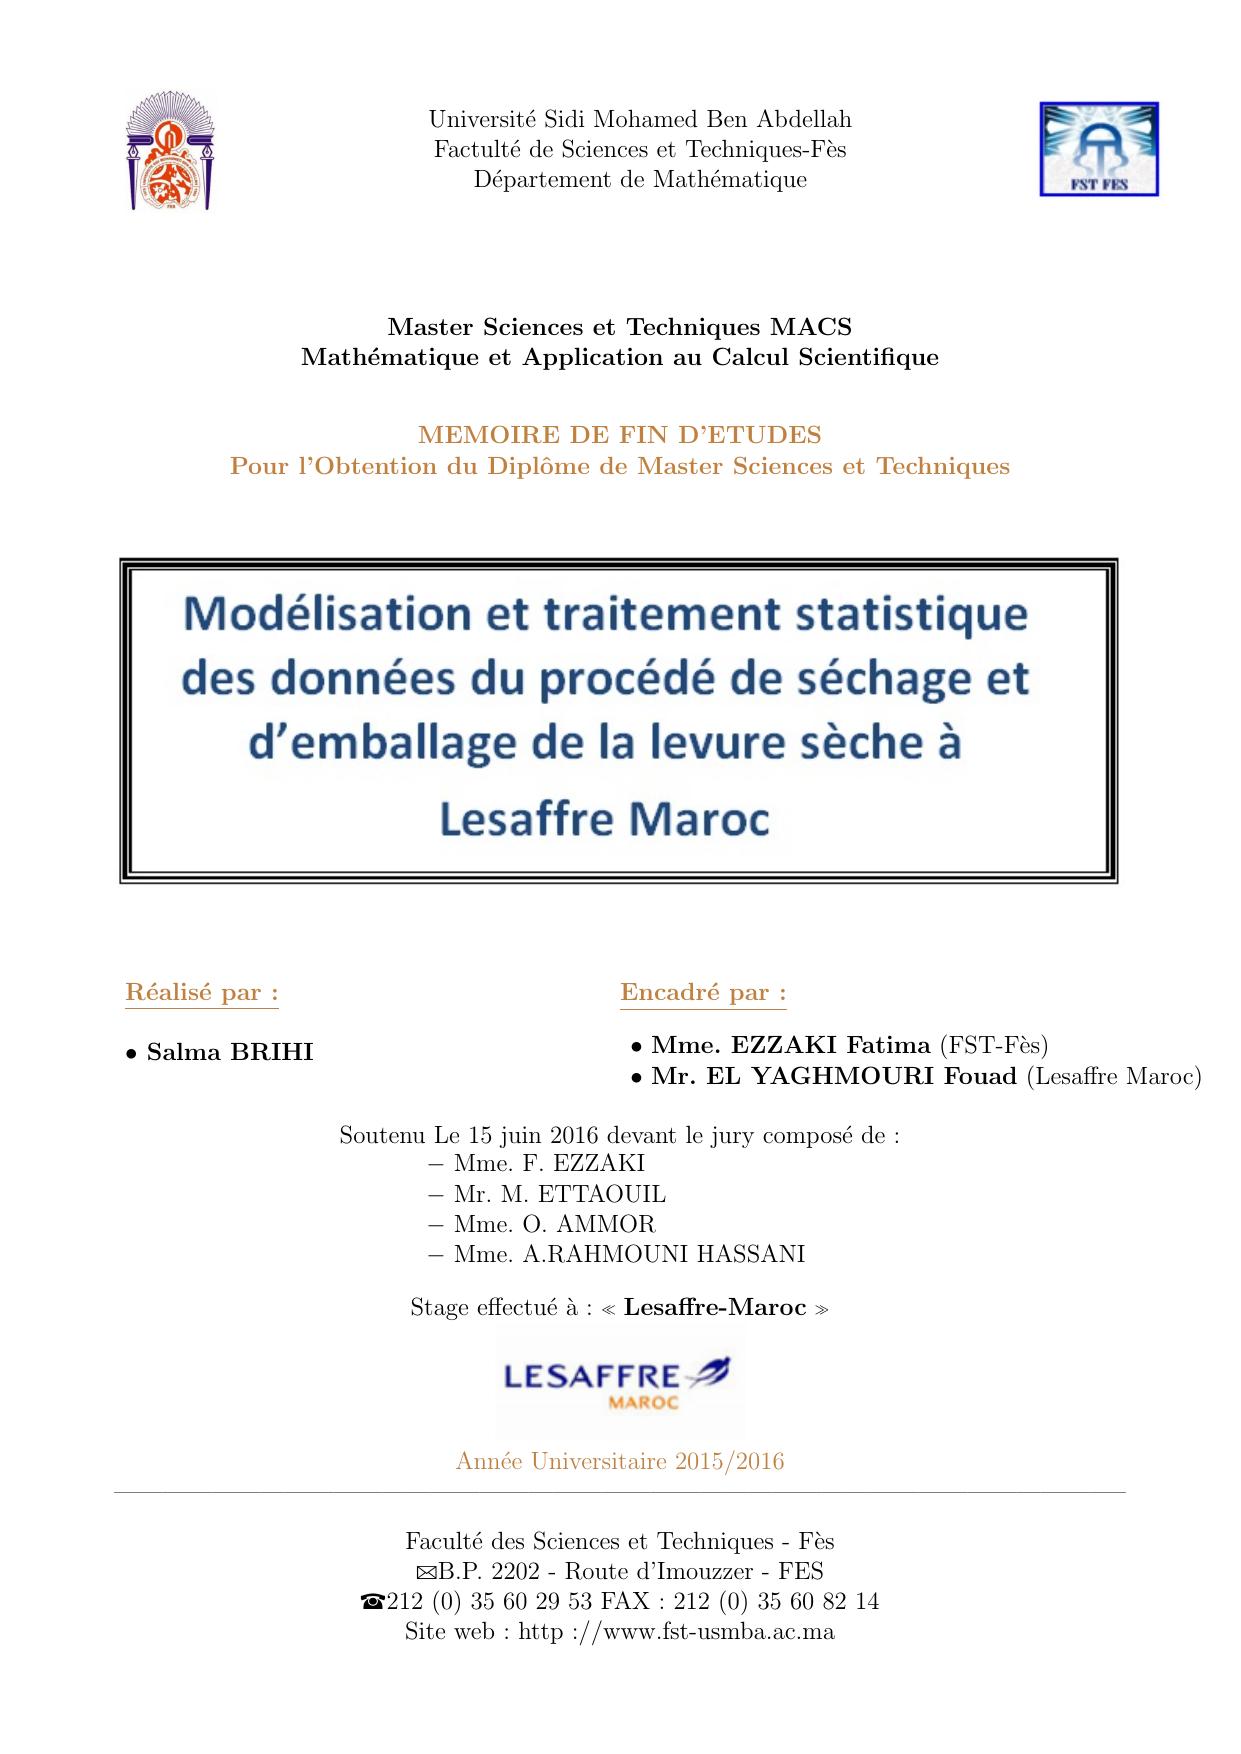 Modélisation et traitement statistique des données du péocédé de séchage et d'emballage de levure sèche à Lesaffre Maroc